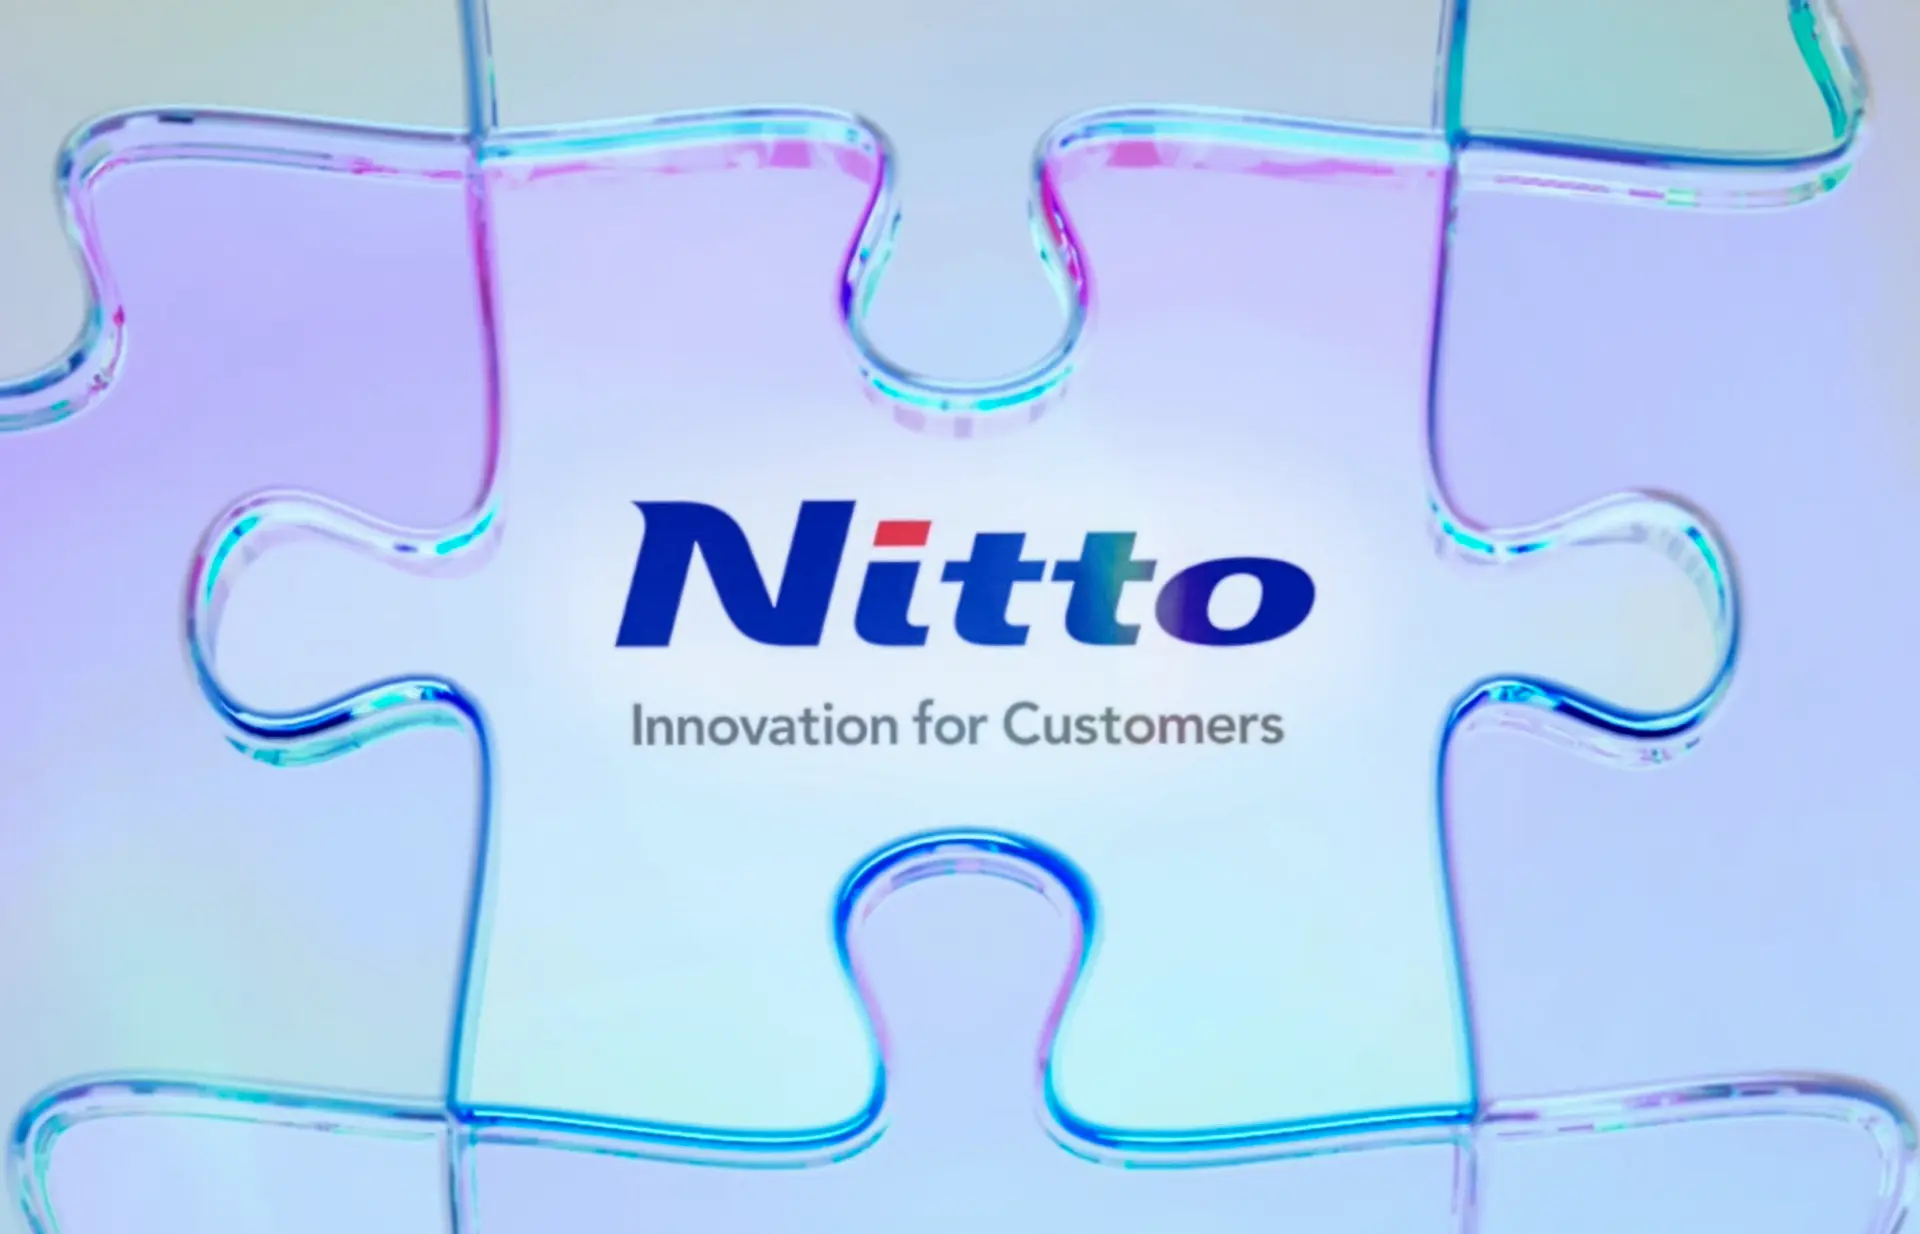 中期管理计划“Nitto for Everyone 2025（Nitto 为所有人 2025）”